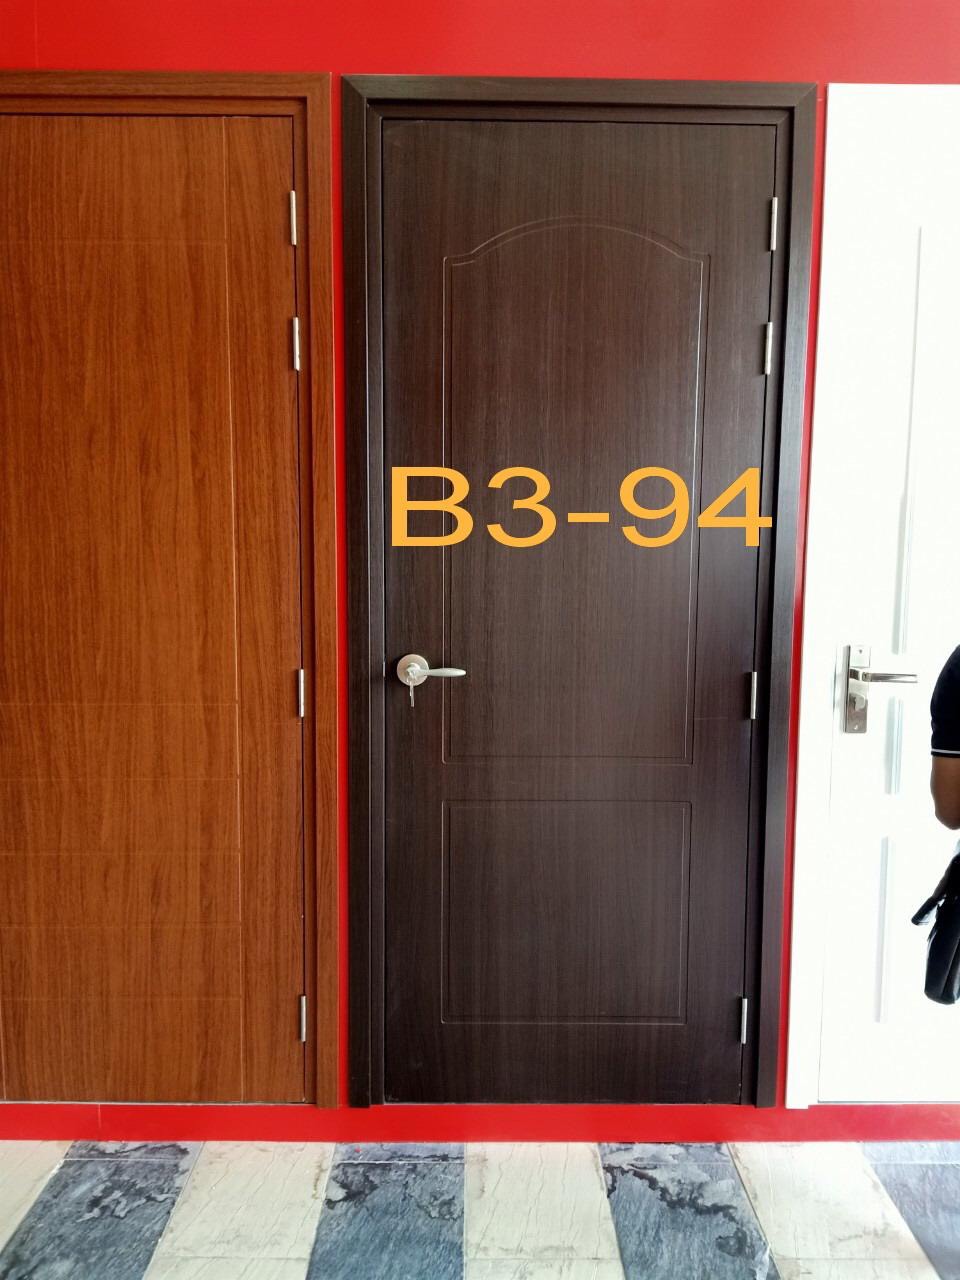 Cửa Composite phủ da mẫu SYB3 - 94 được trưng bày tại Showroom Nha Trang.